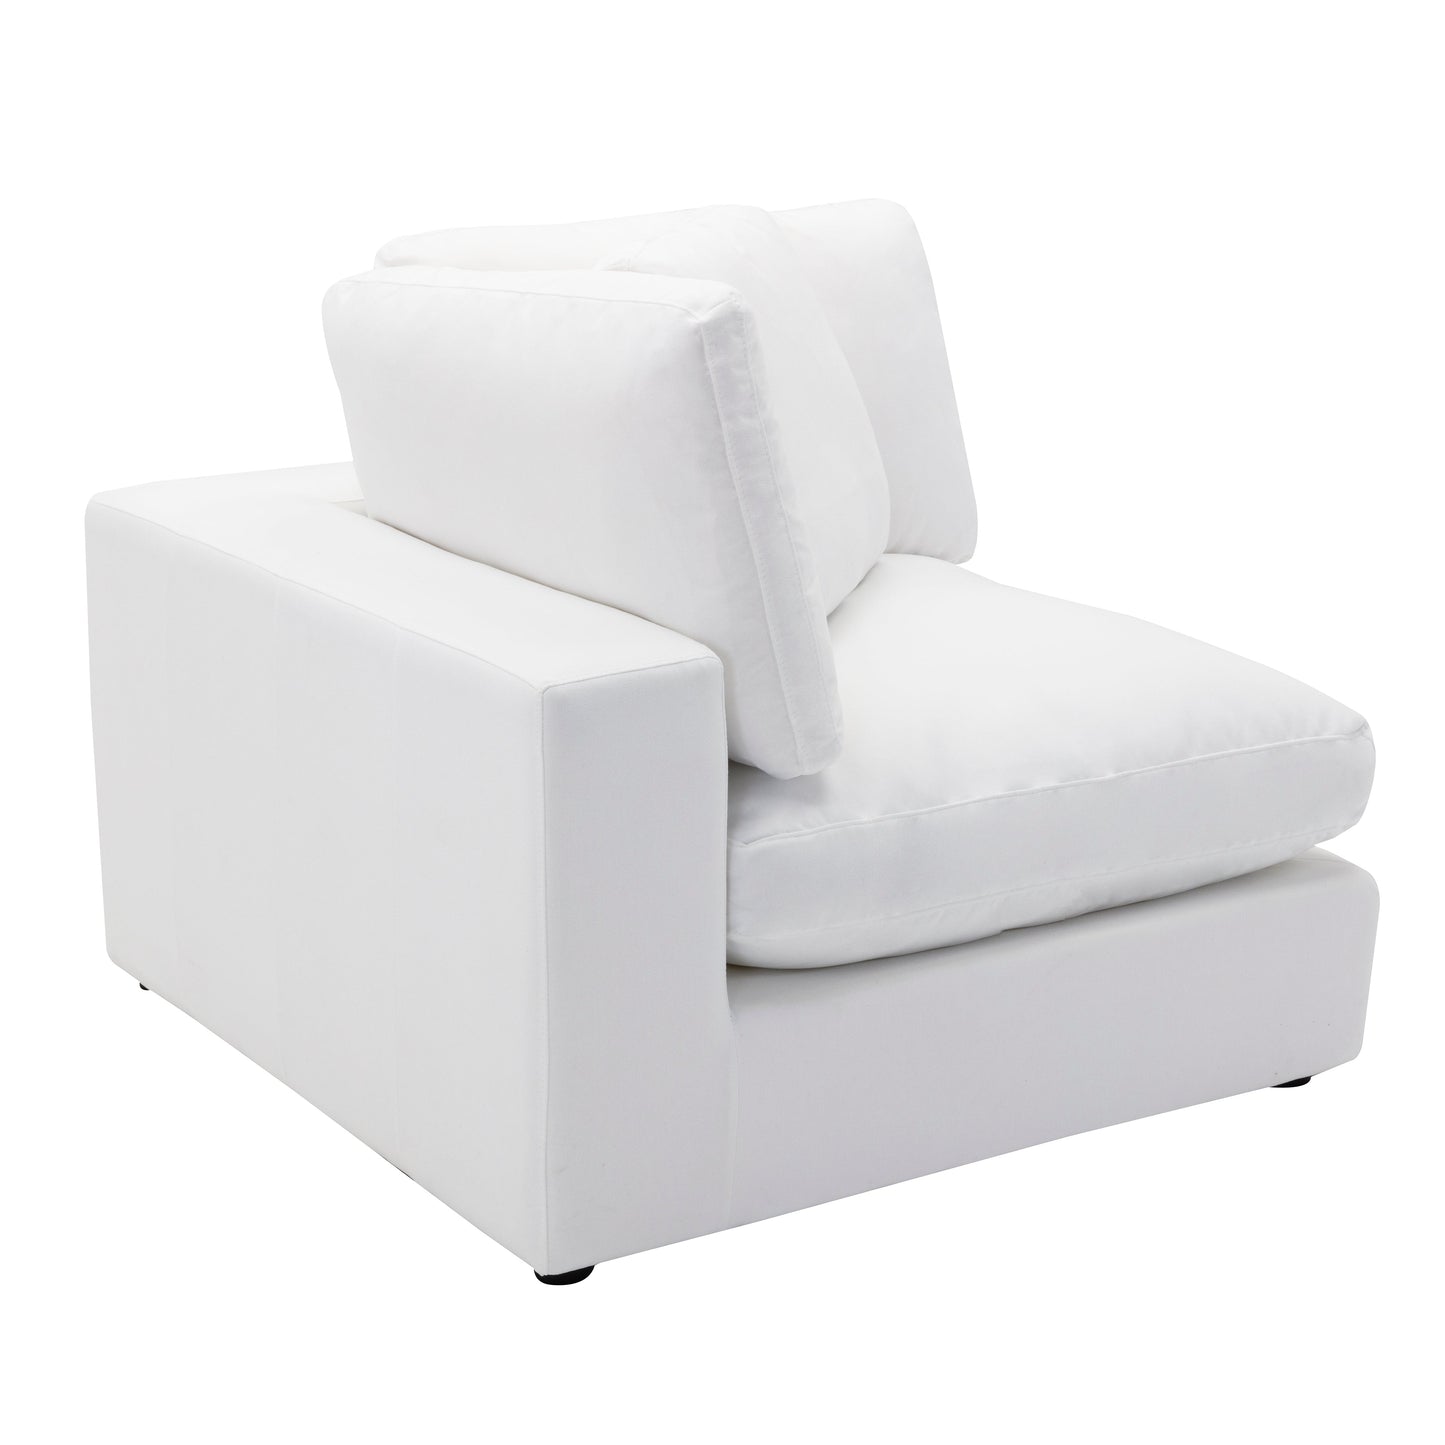 Rivas Contemporary Feather Fill 6-Piece Modular Sectional Sofa, White